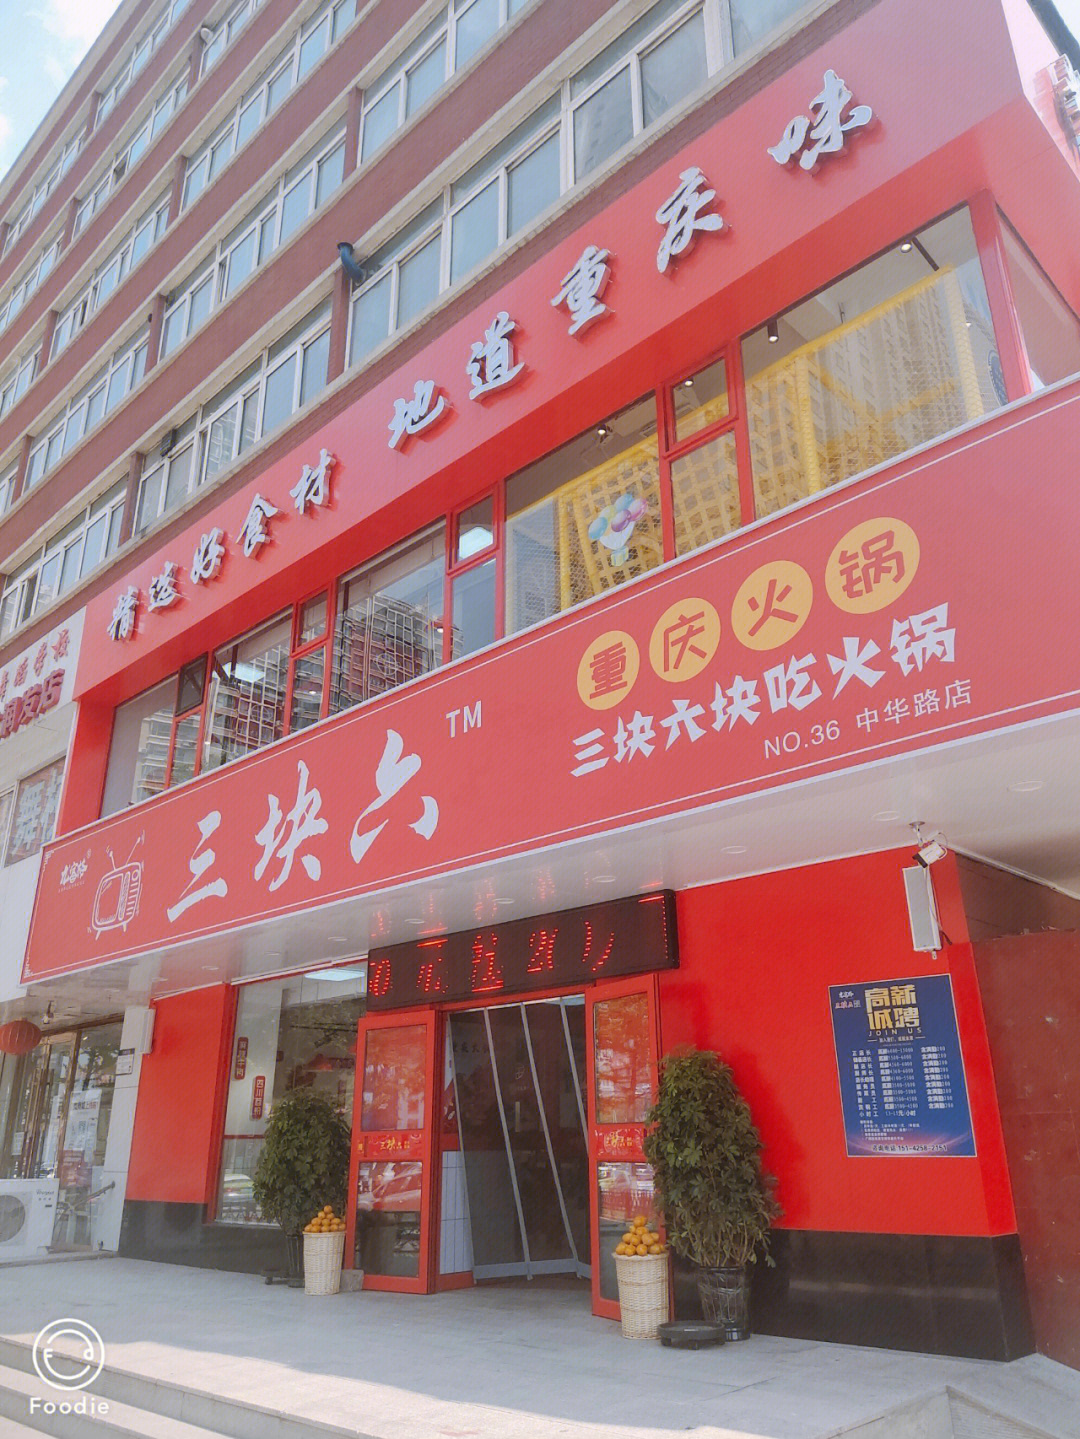 顿重庆火锅让人开心哩[呲牙]中华南路大润发超市对面新开了一家火锅店